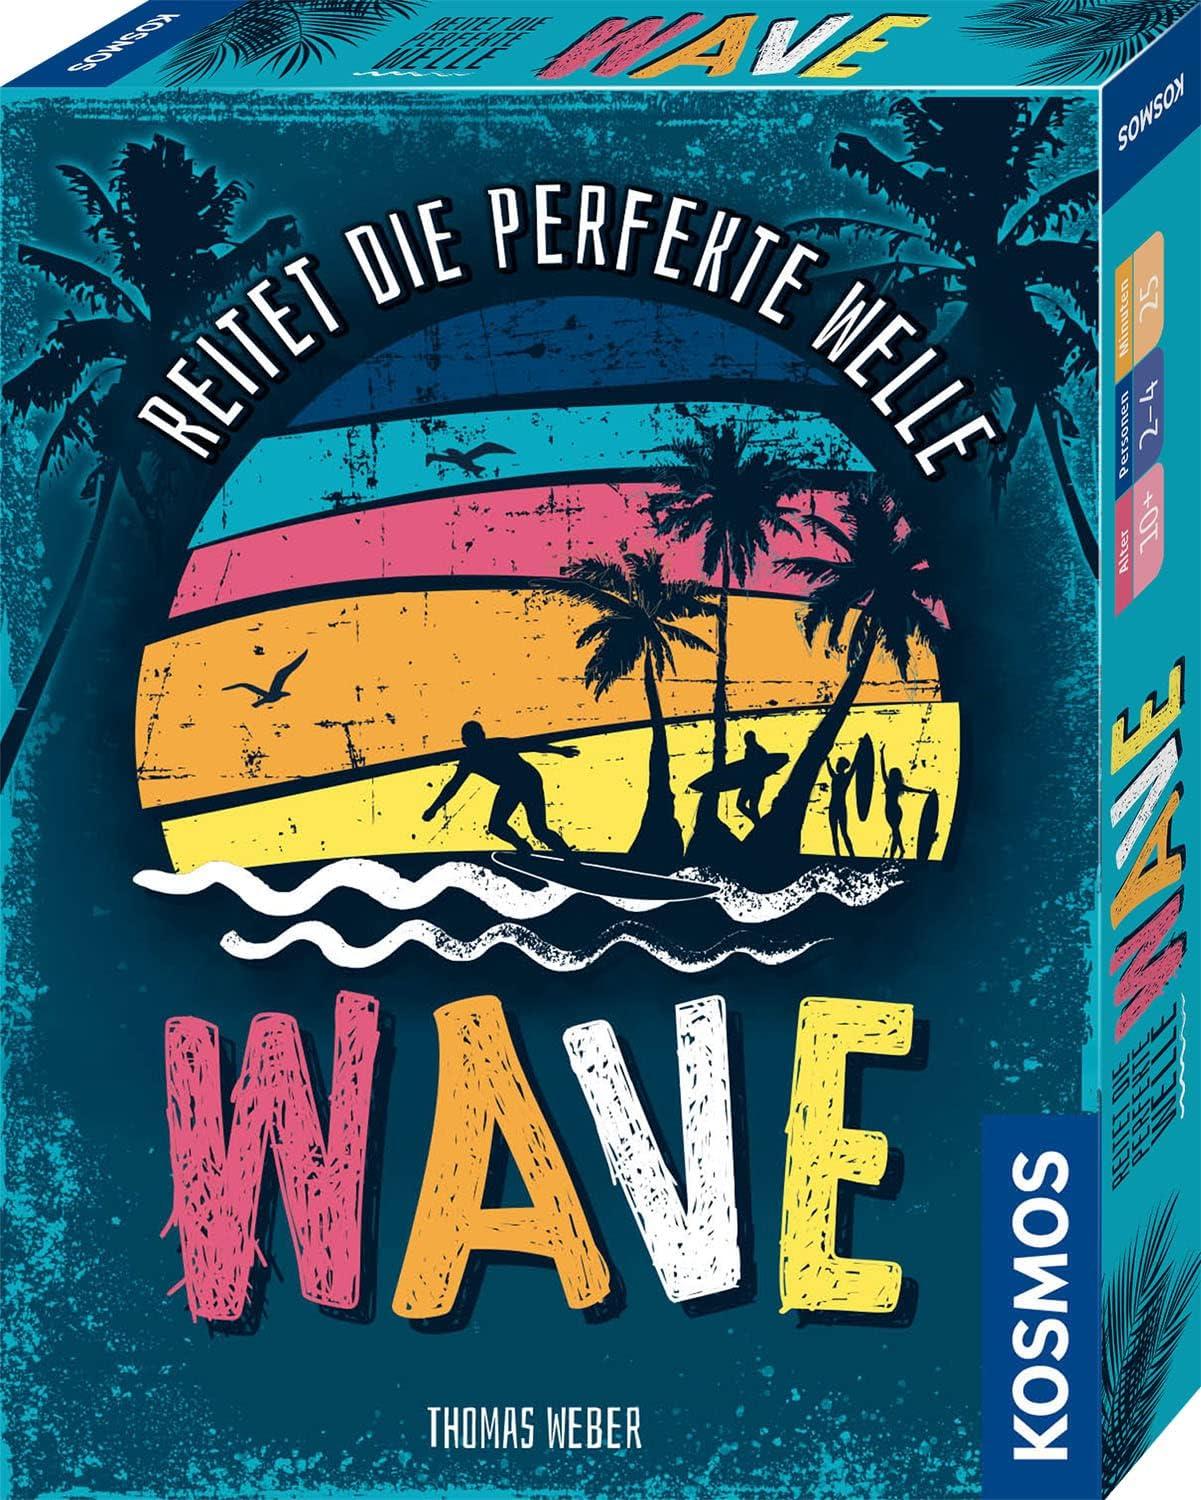 Waves: Reitet die perfekte Welle